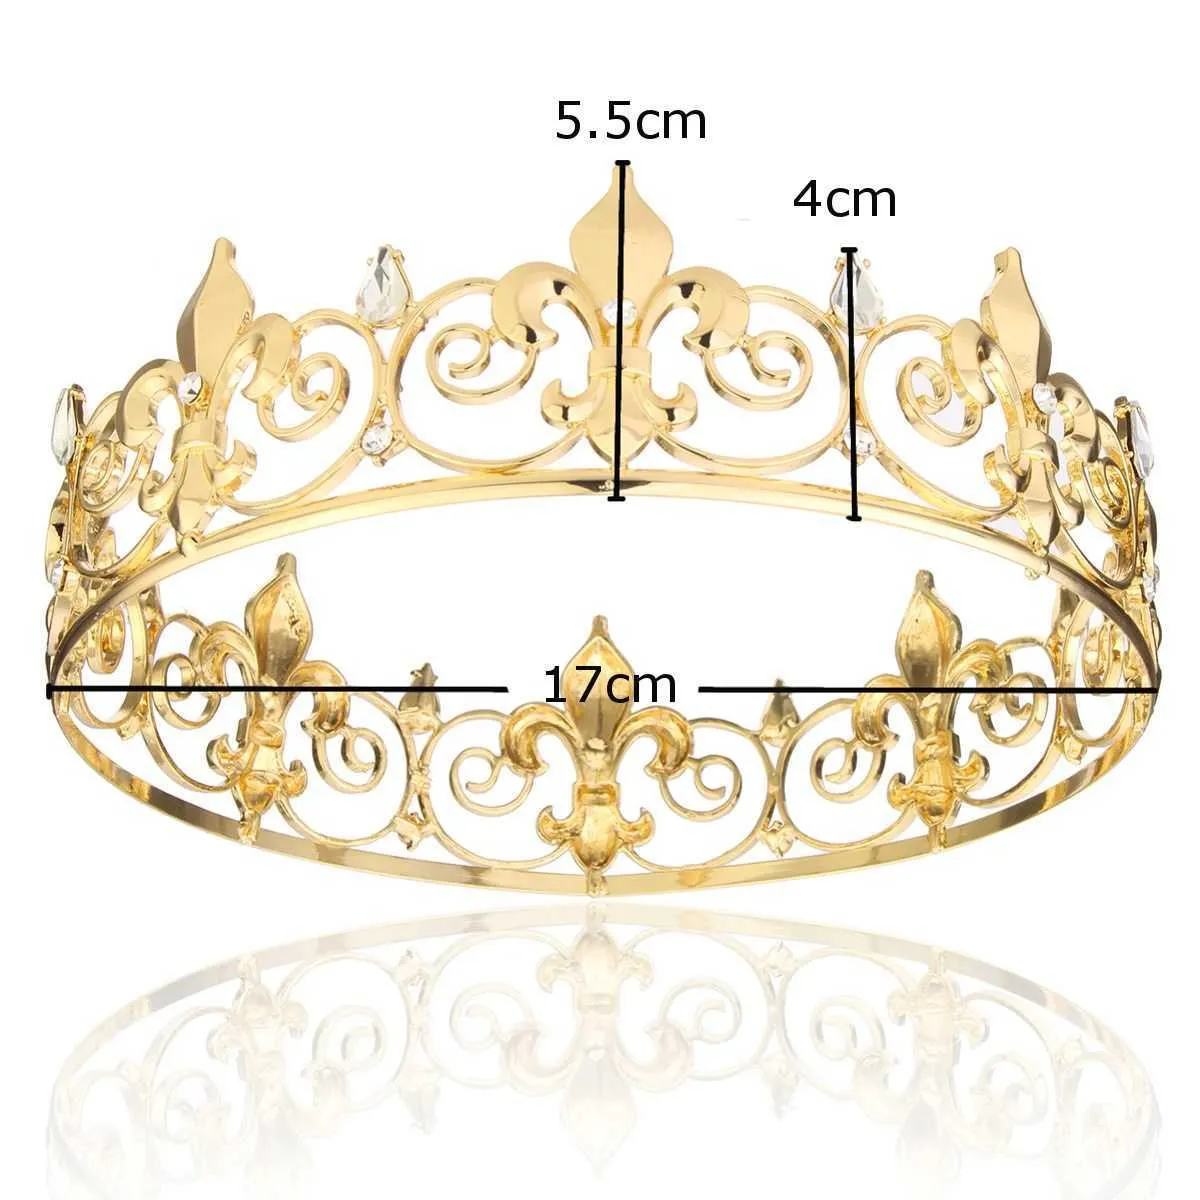 Akcesoria Całego Kręgu Złotego Złota Król Men039s Crown Round Imperial Tiara 2106168660611